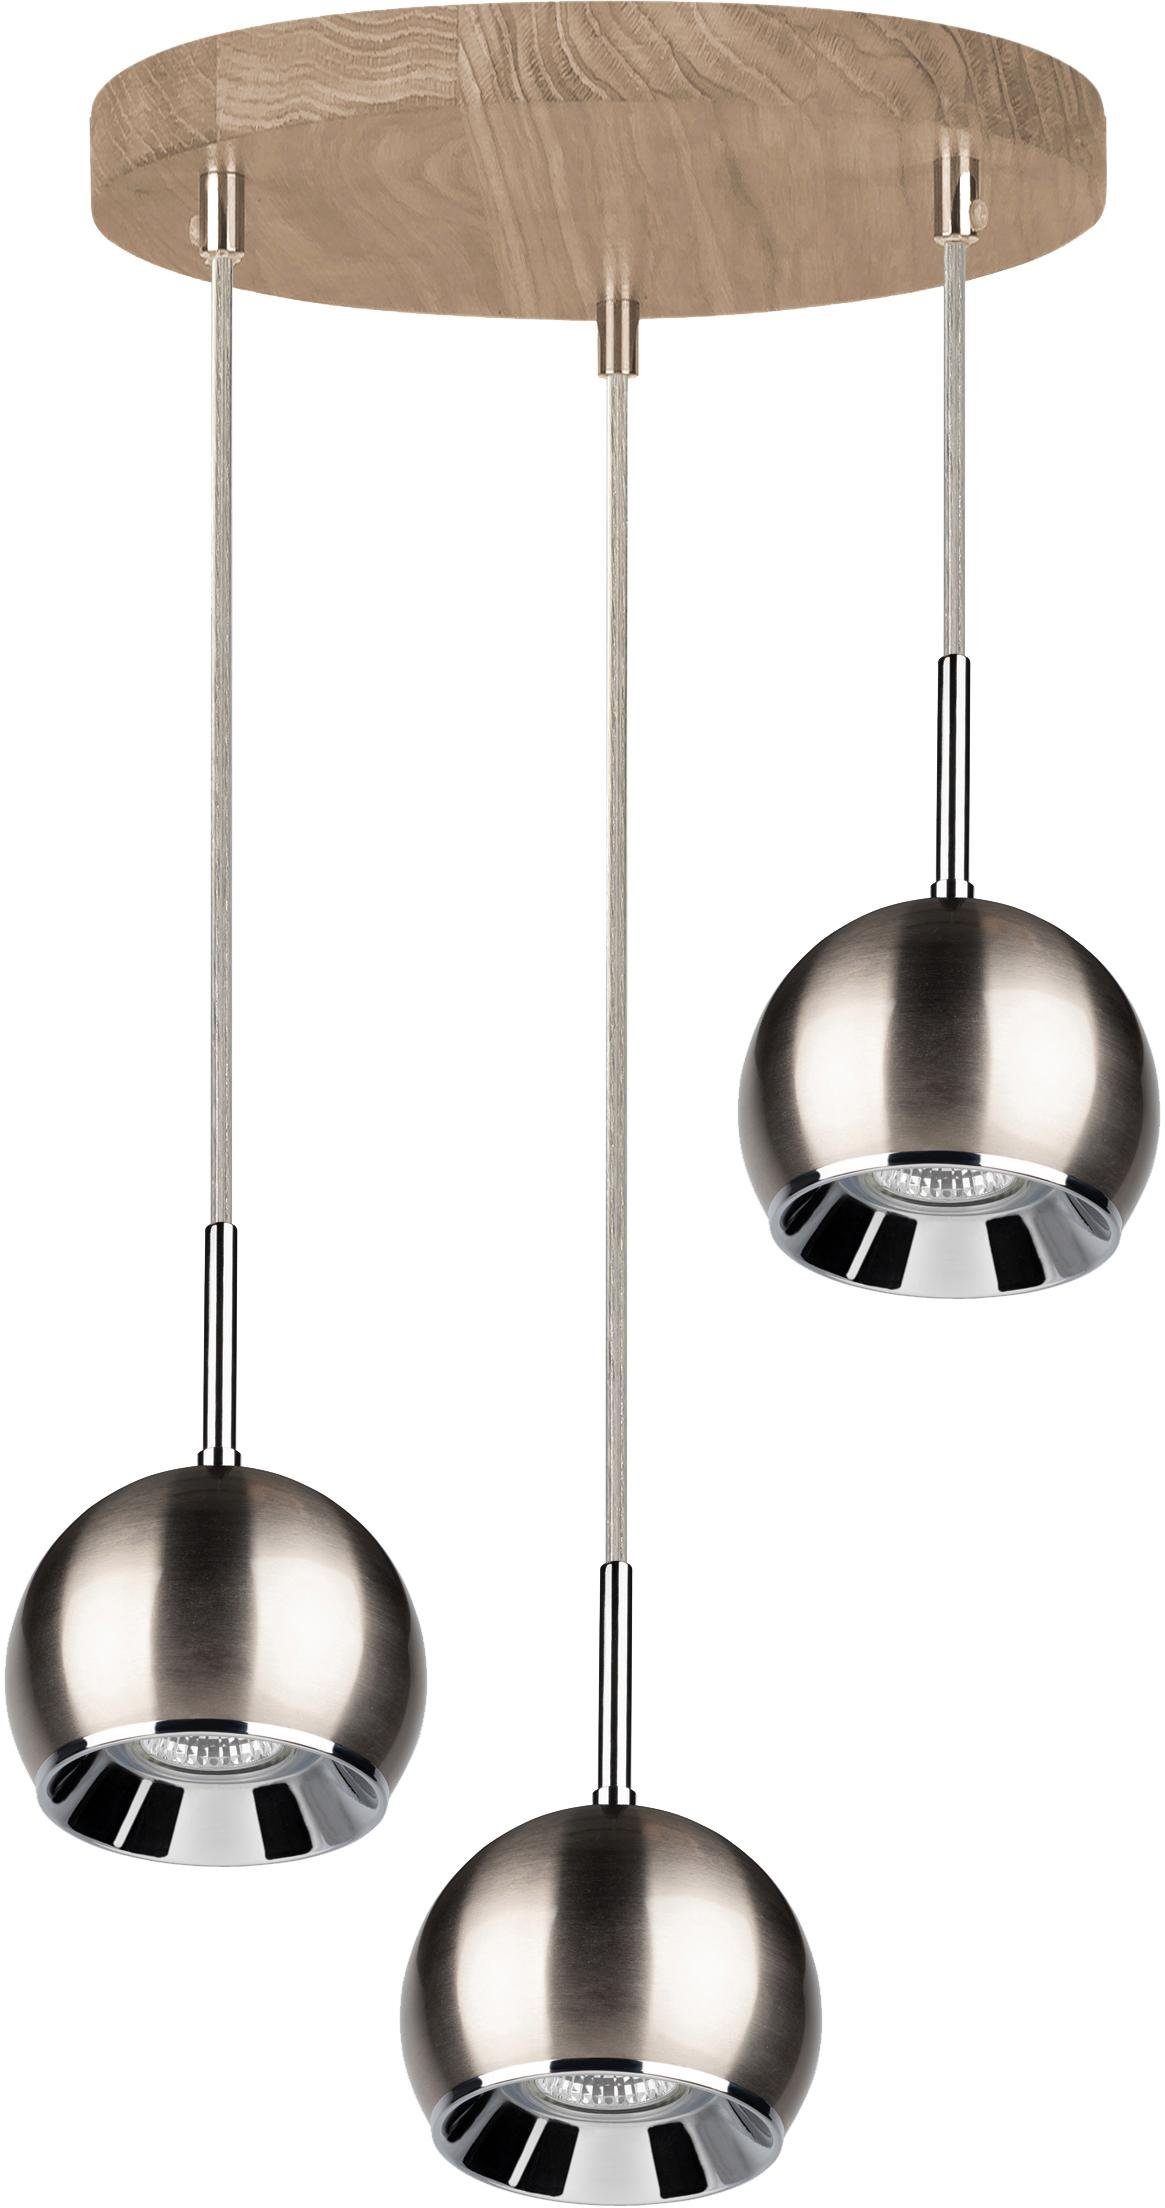 spot light hanglamp ball wood hanglamp, inclusief ledverlichting, eikenhout, kabel in te korten zilver